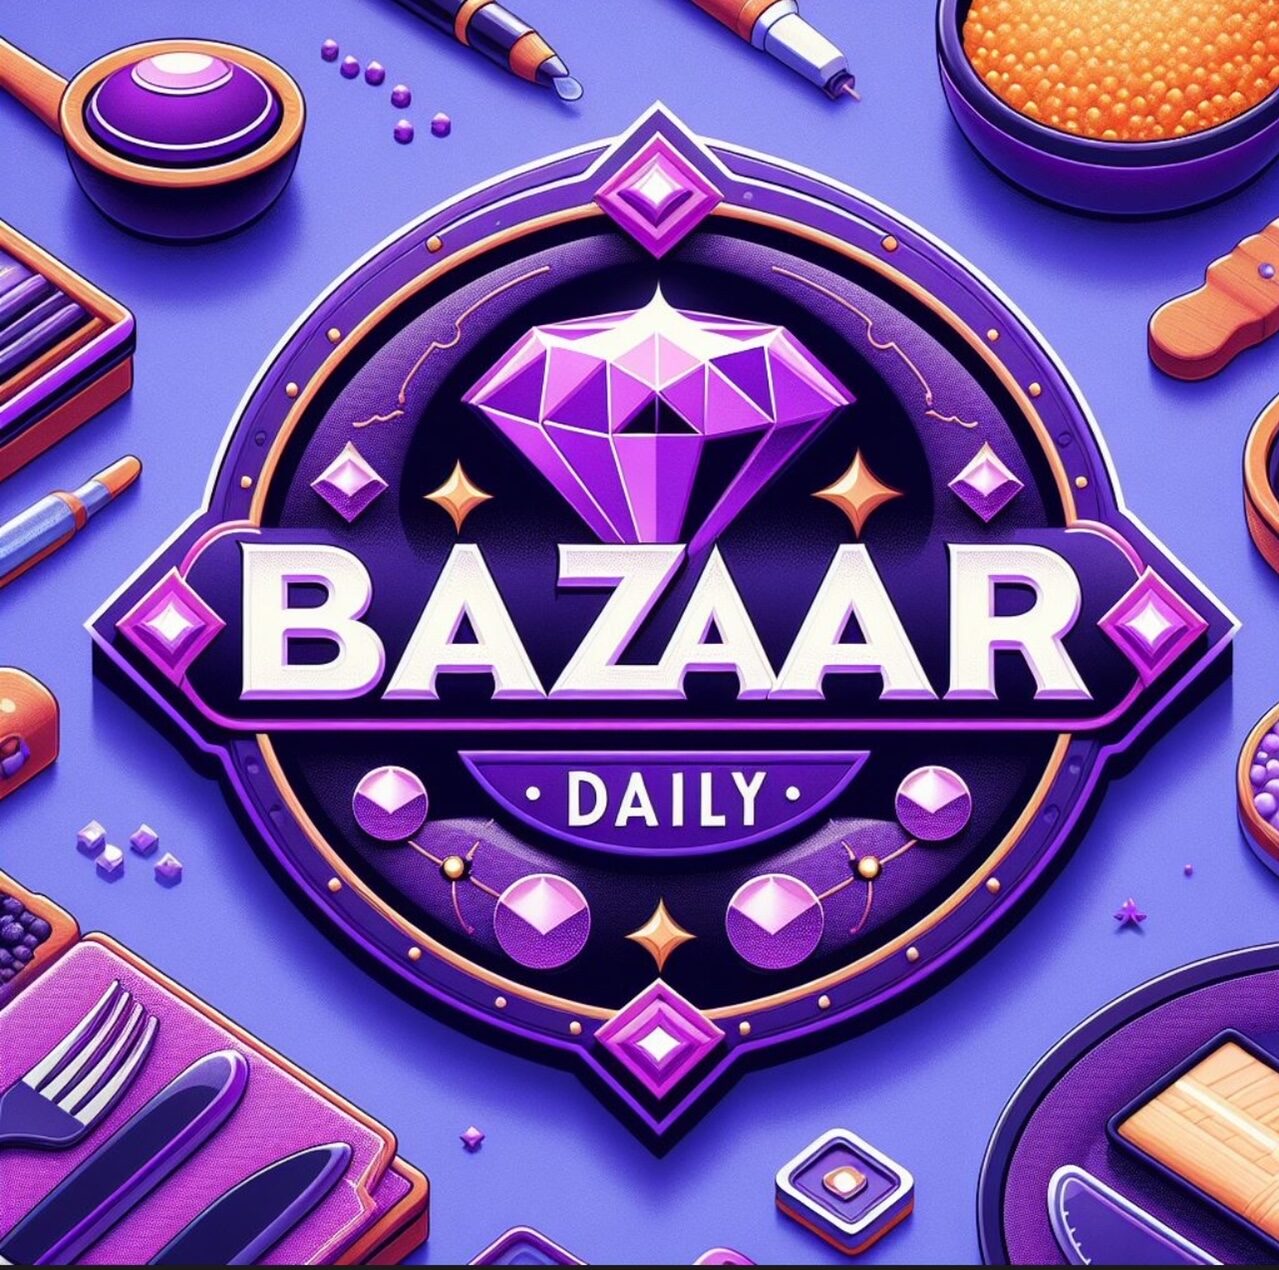 Bazaar Daily News